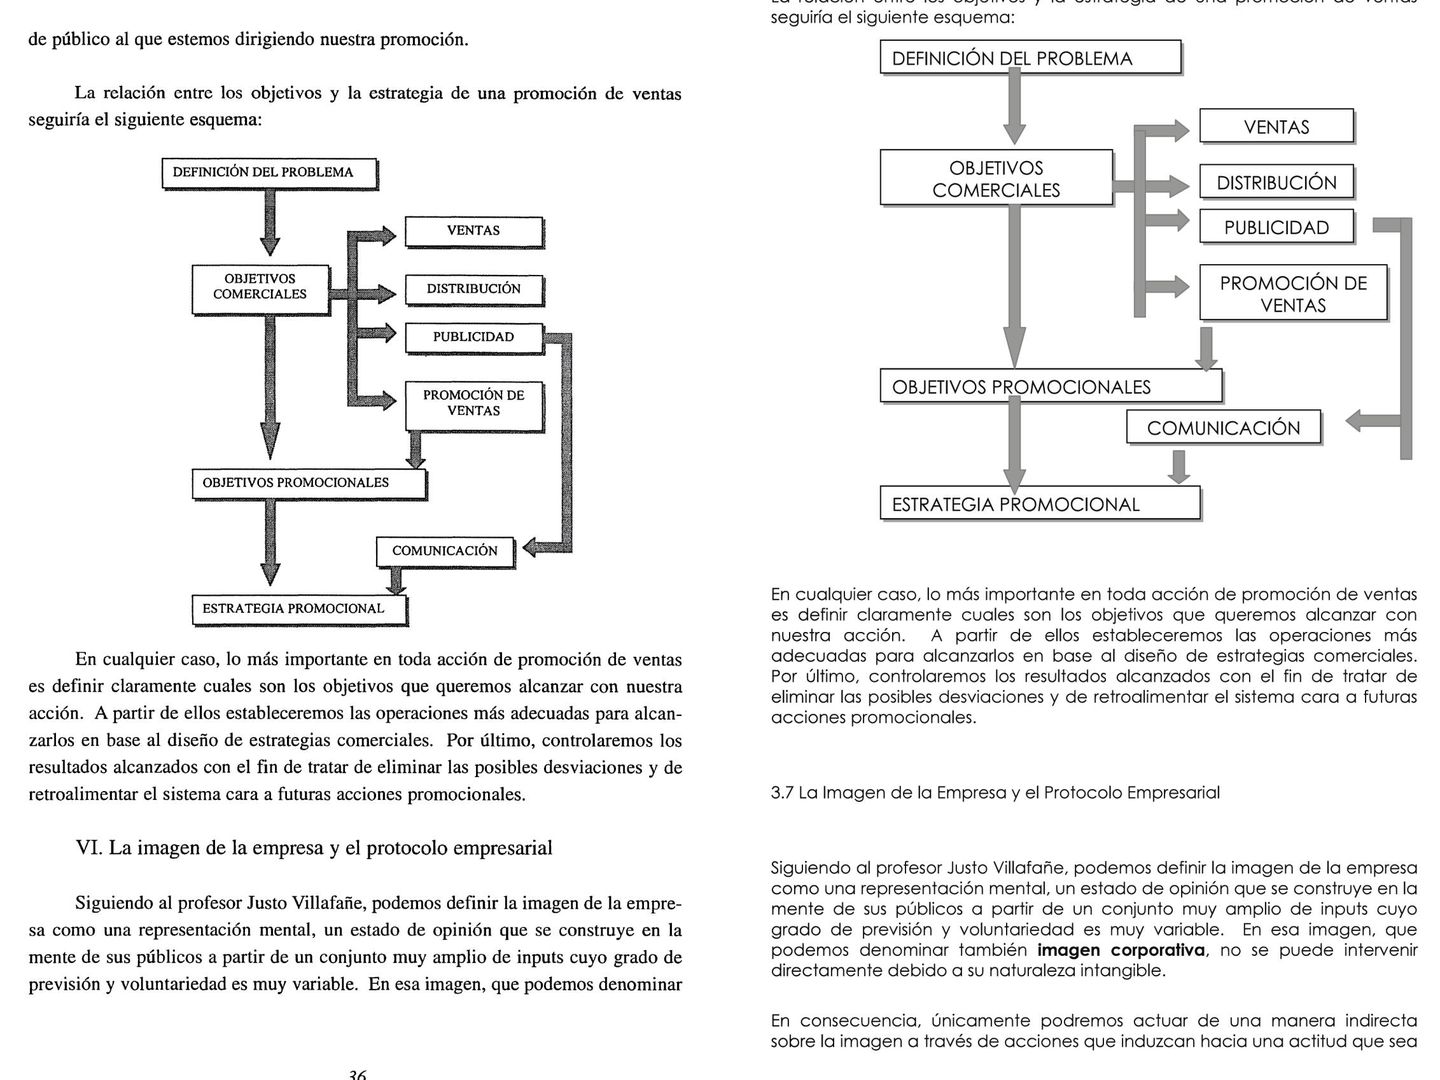 A la izquierda, página del discurso de Javier Maqueda en 2003. A la derecha, página de la tesis de su hija, Maider, en 2012. (Pinche en la imagen para verla a tamaño completo)